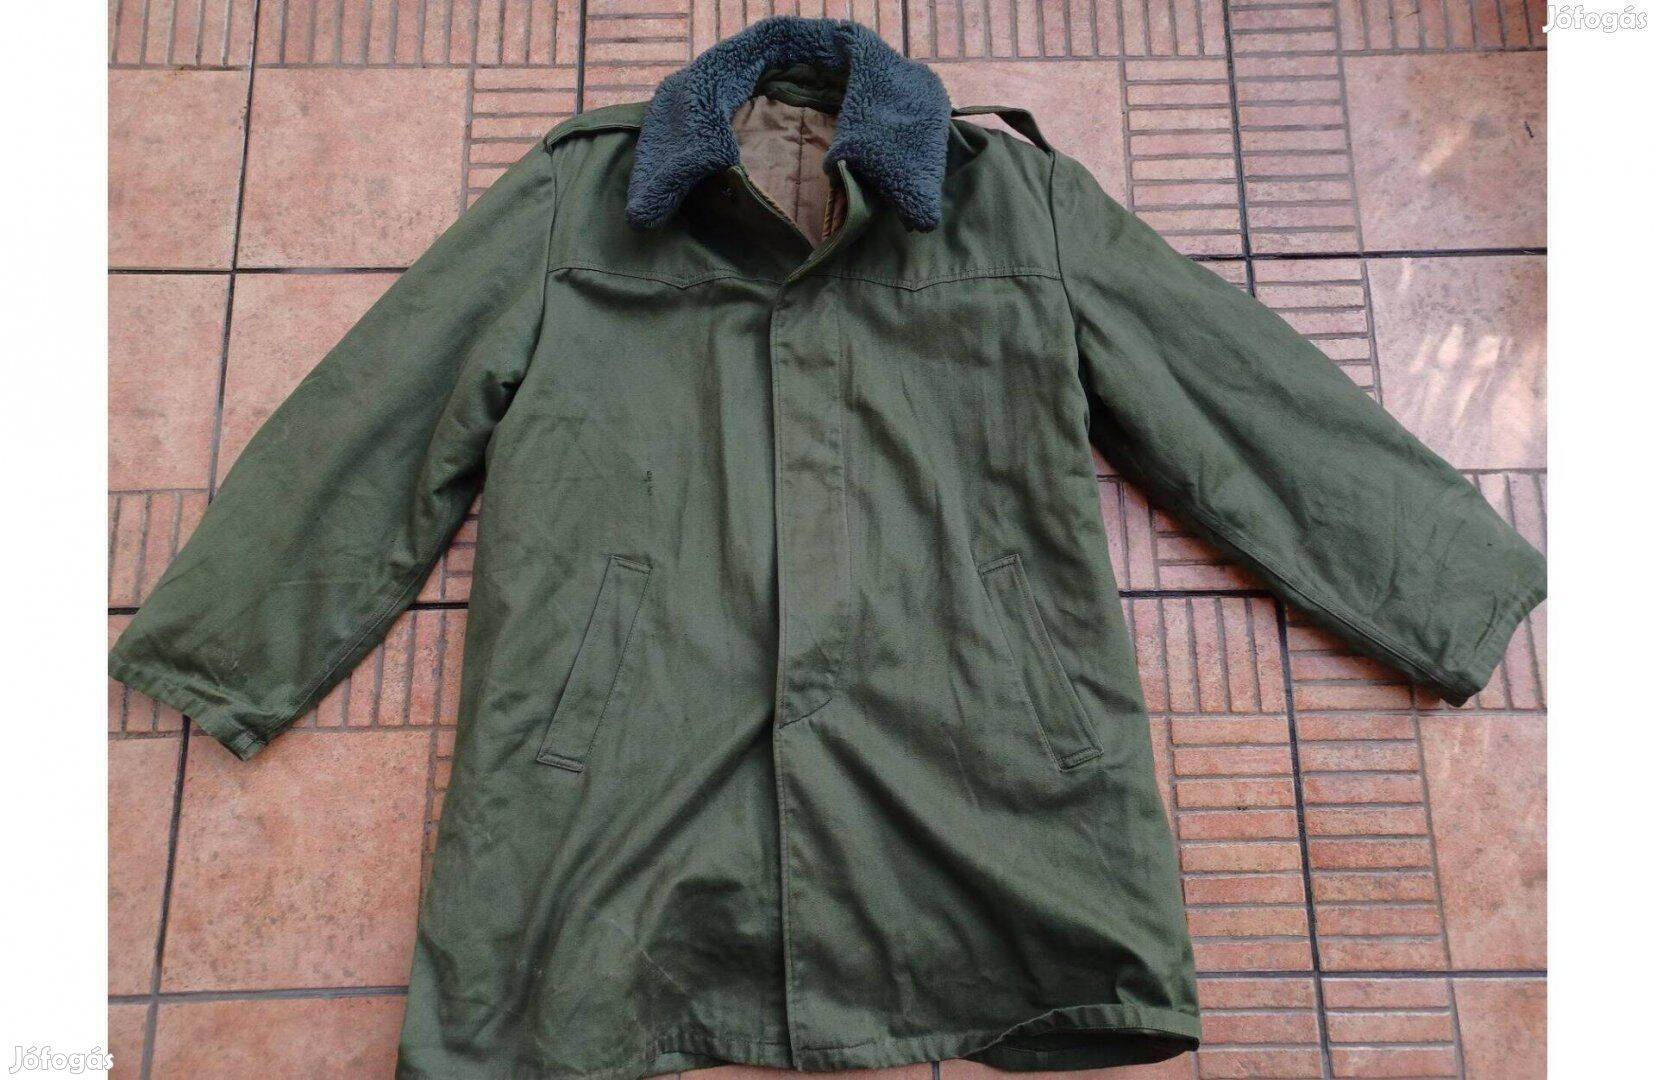 Kivehető béléses téli prémes katonai néphadsereg kabát 50 L XL